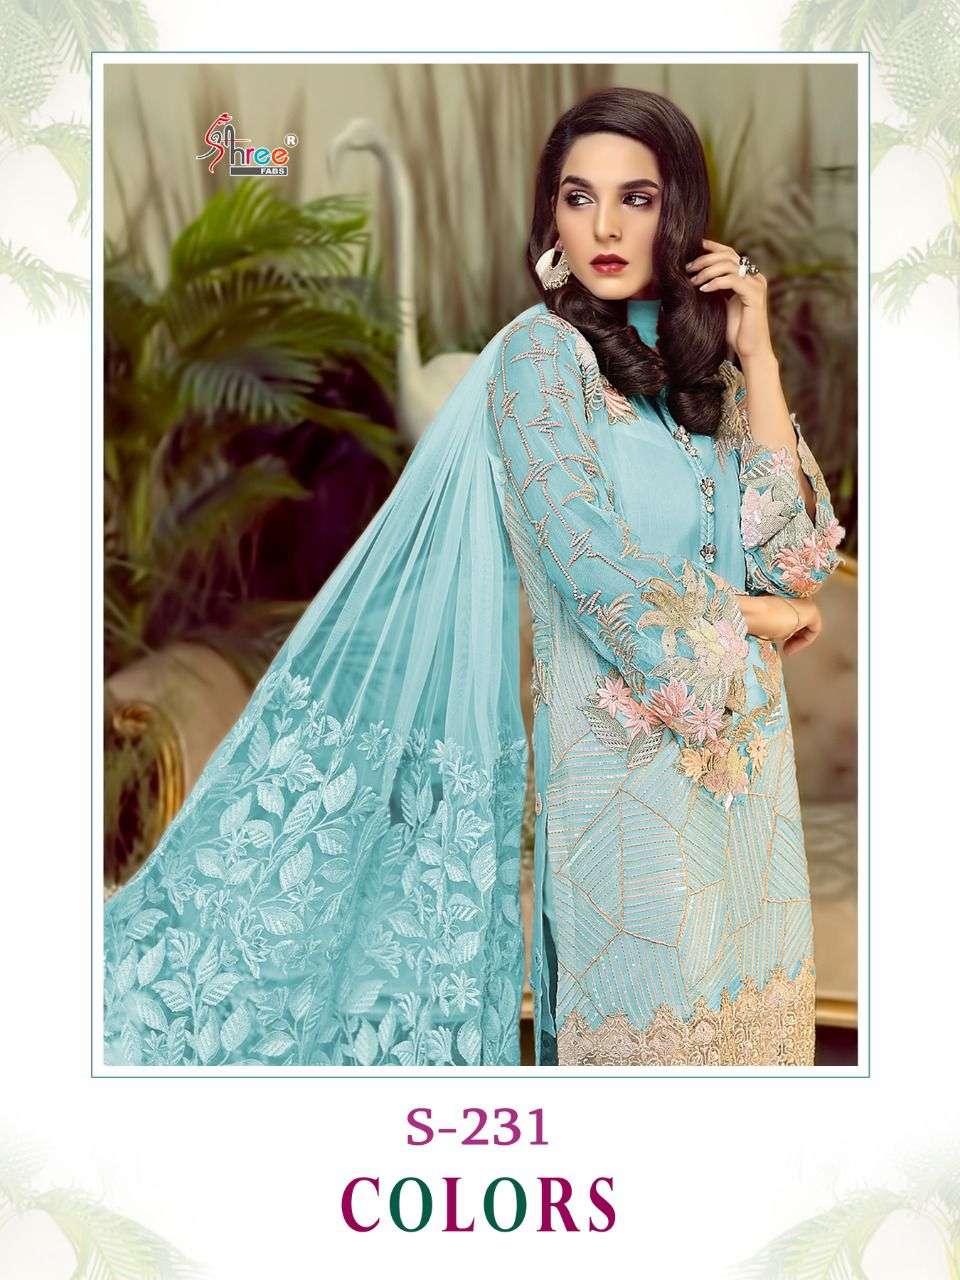 Shree Fabs S 231 Colors Fancy Pakistani Suit Catalog Wholesaler